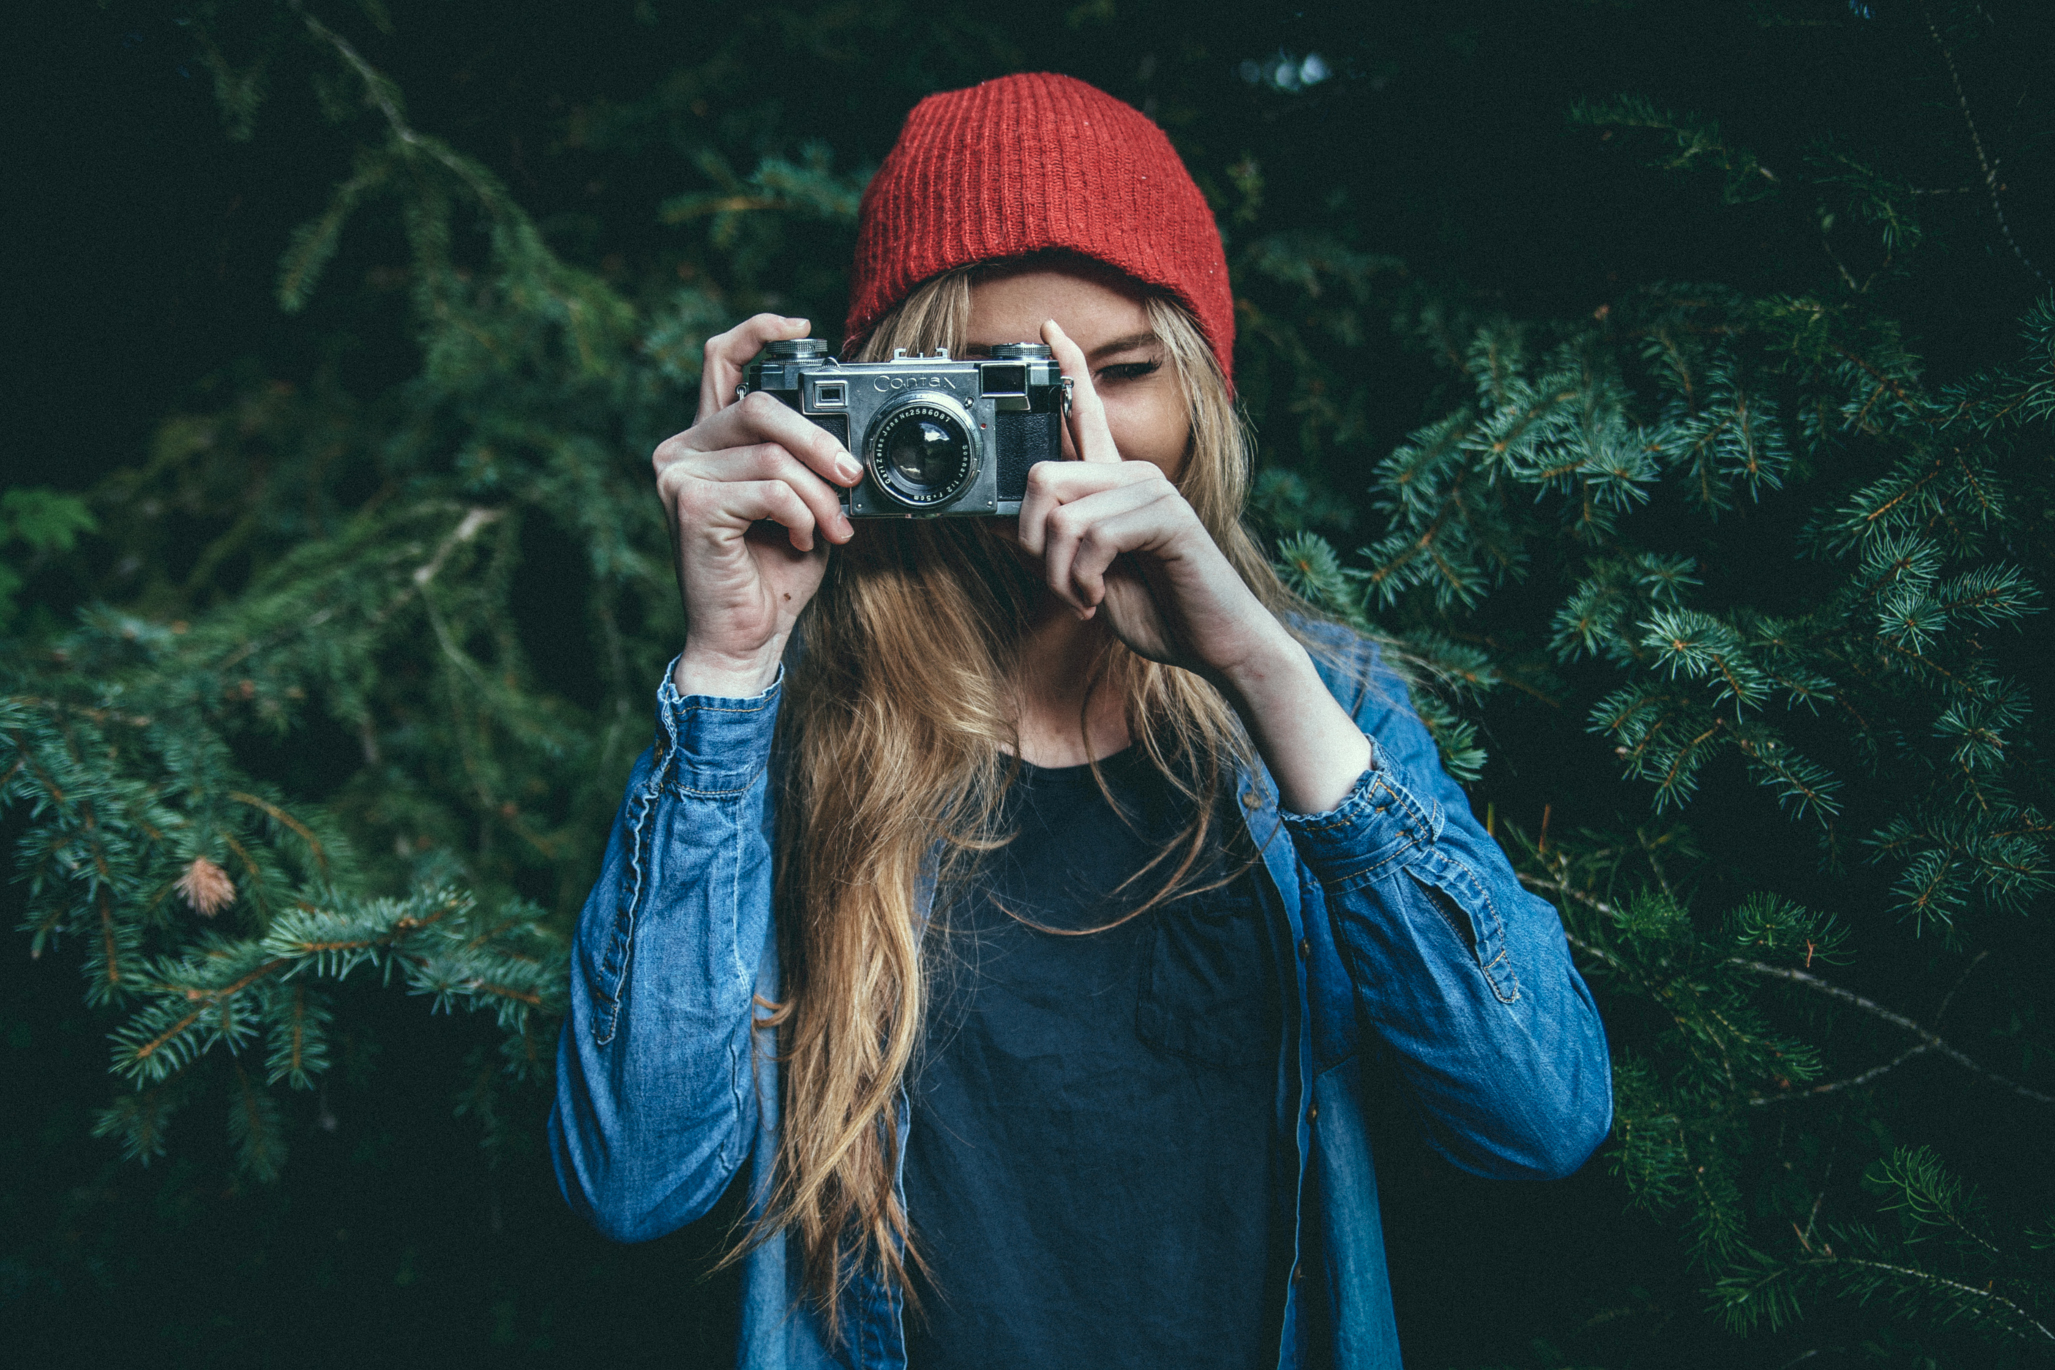 Dziewczyna ubrana na niebiesko w czerwonej czapce robi zdjęcie aparatem